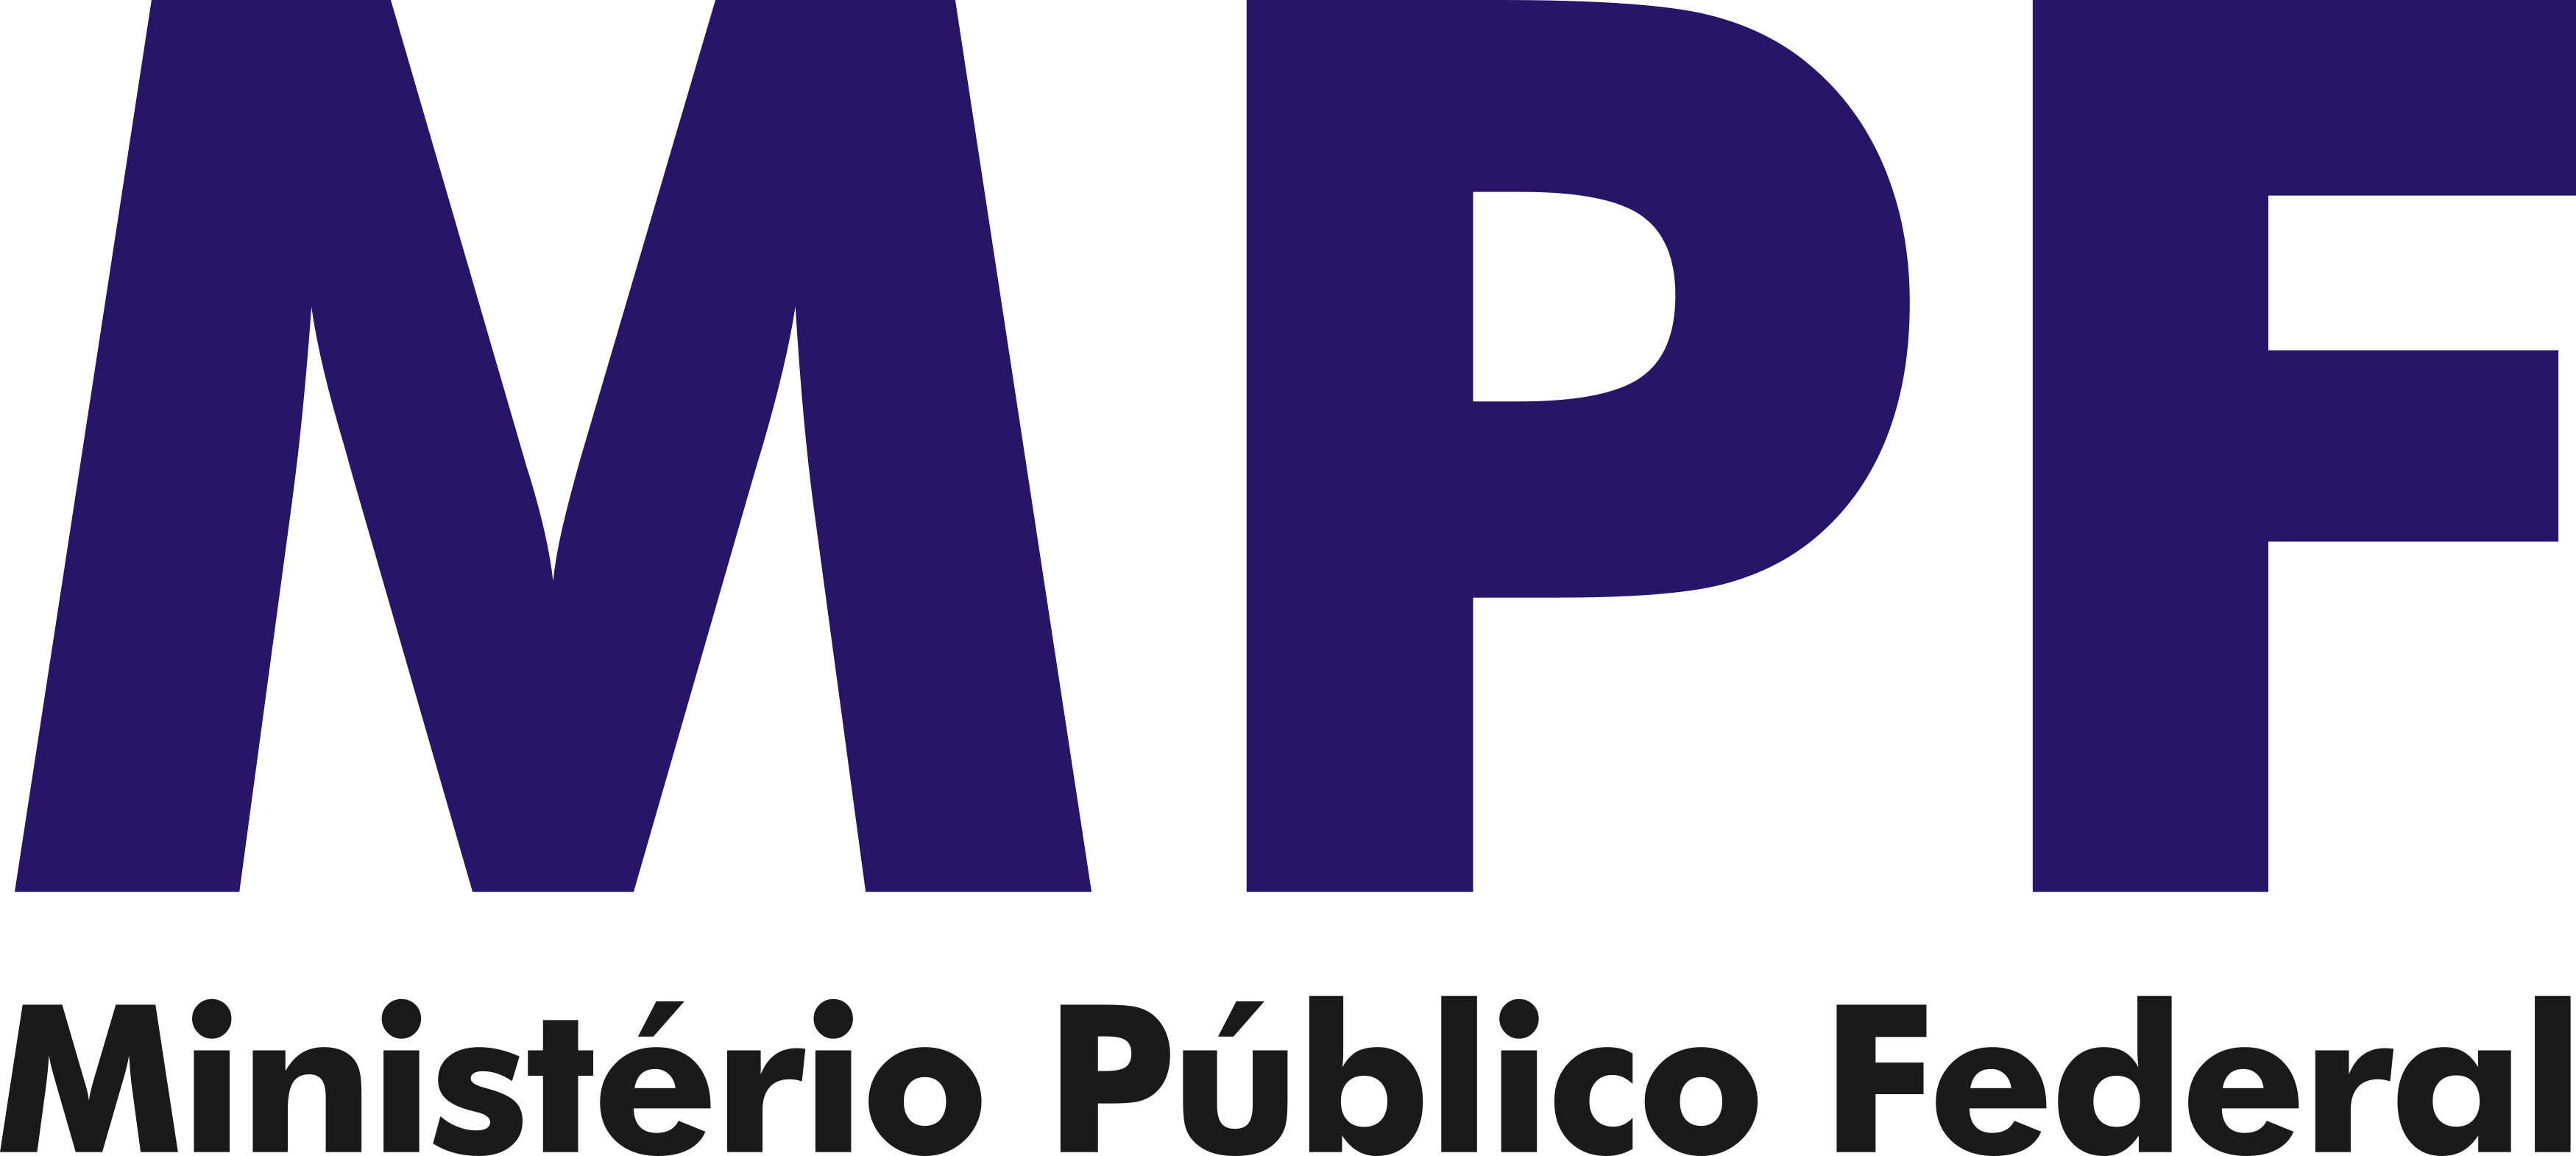 mpf-logo-ministerio-publico-federal